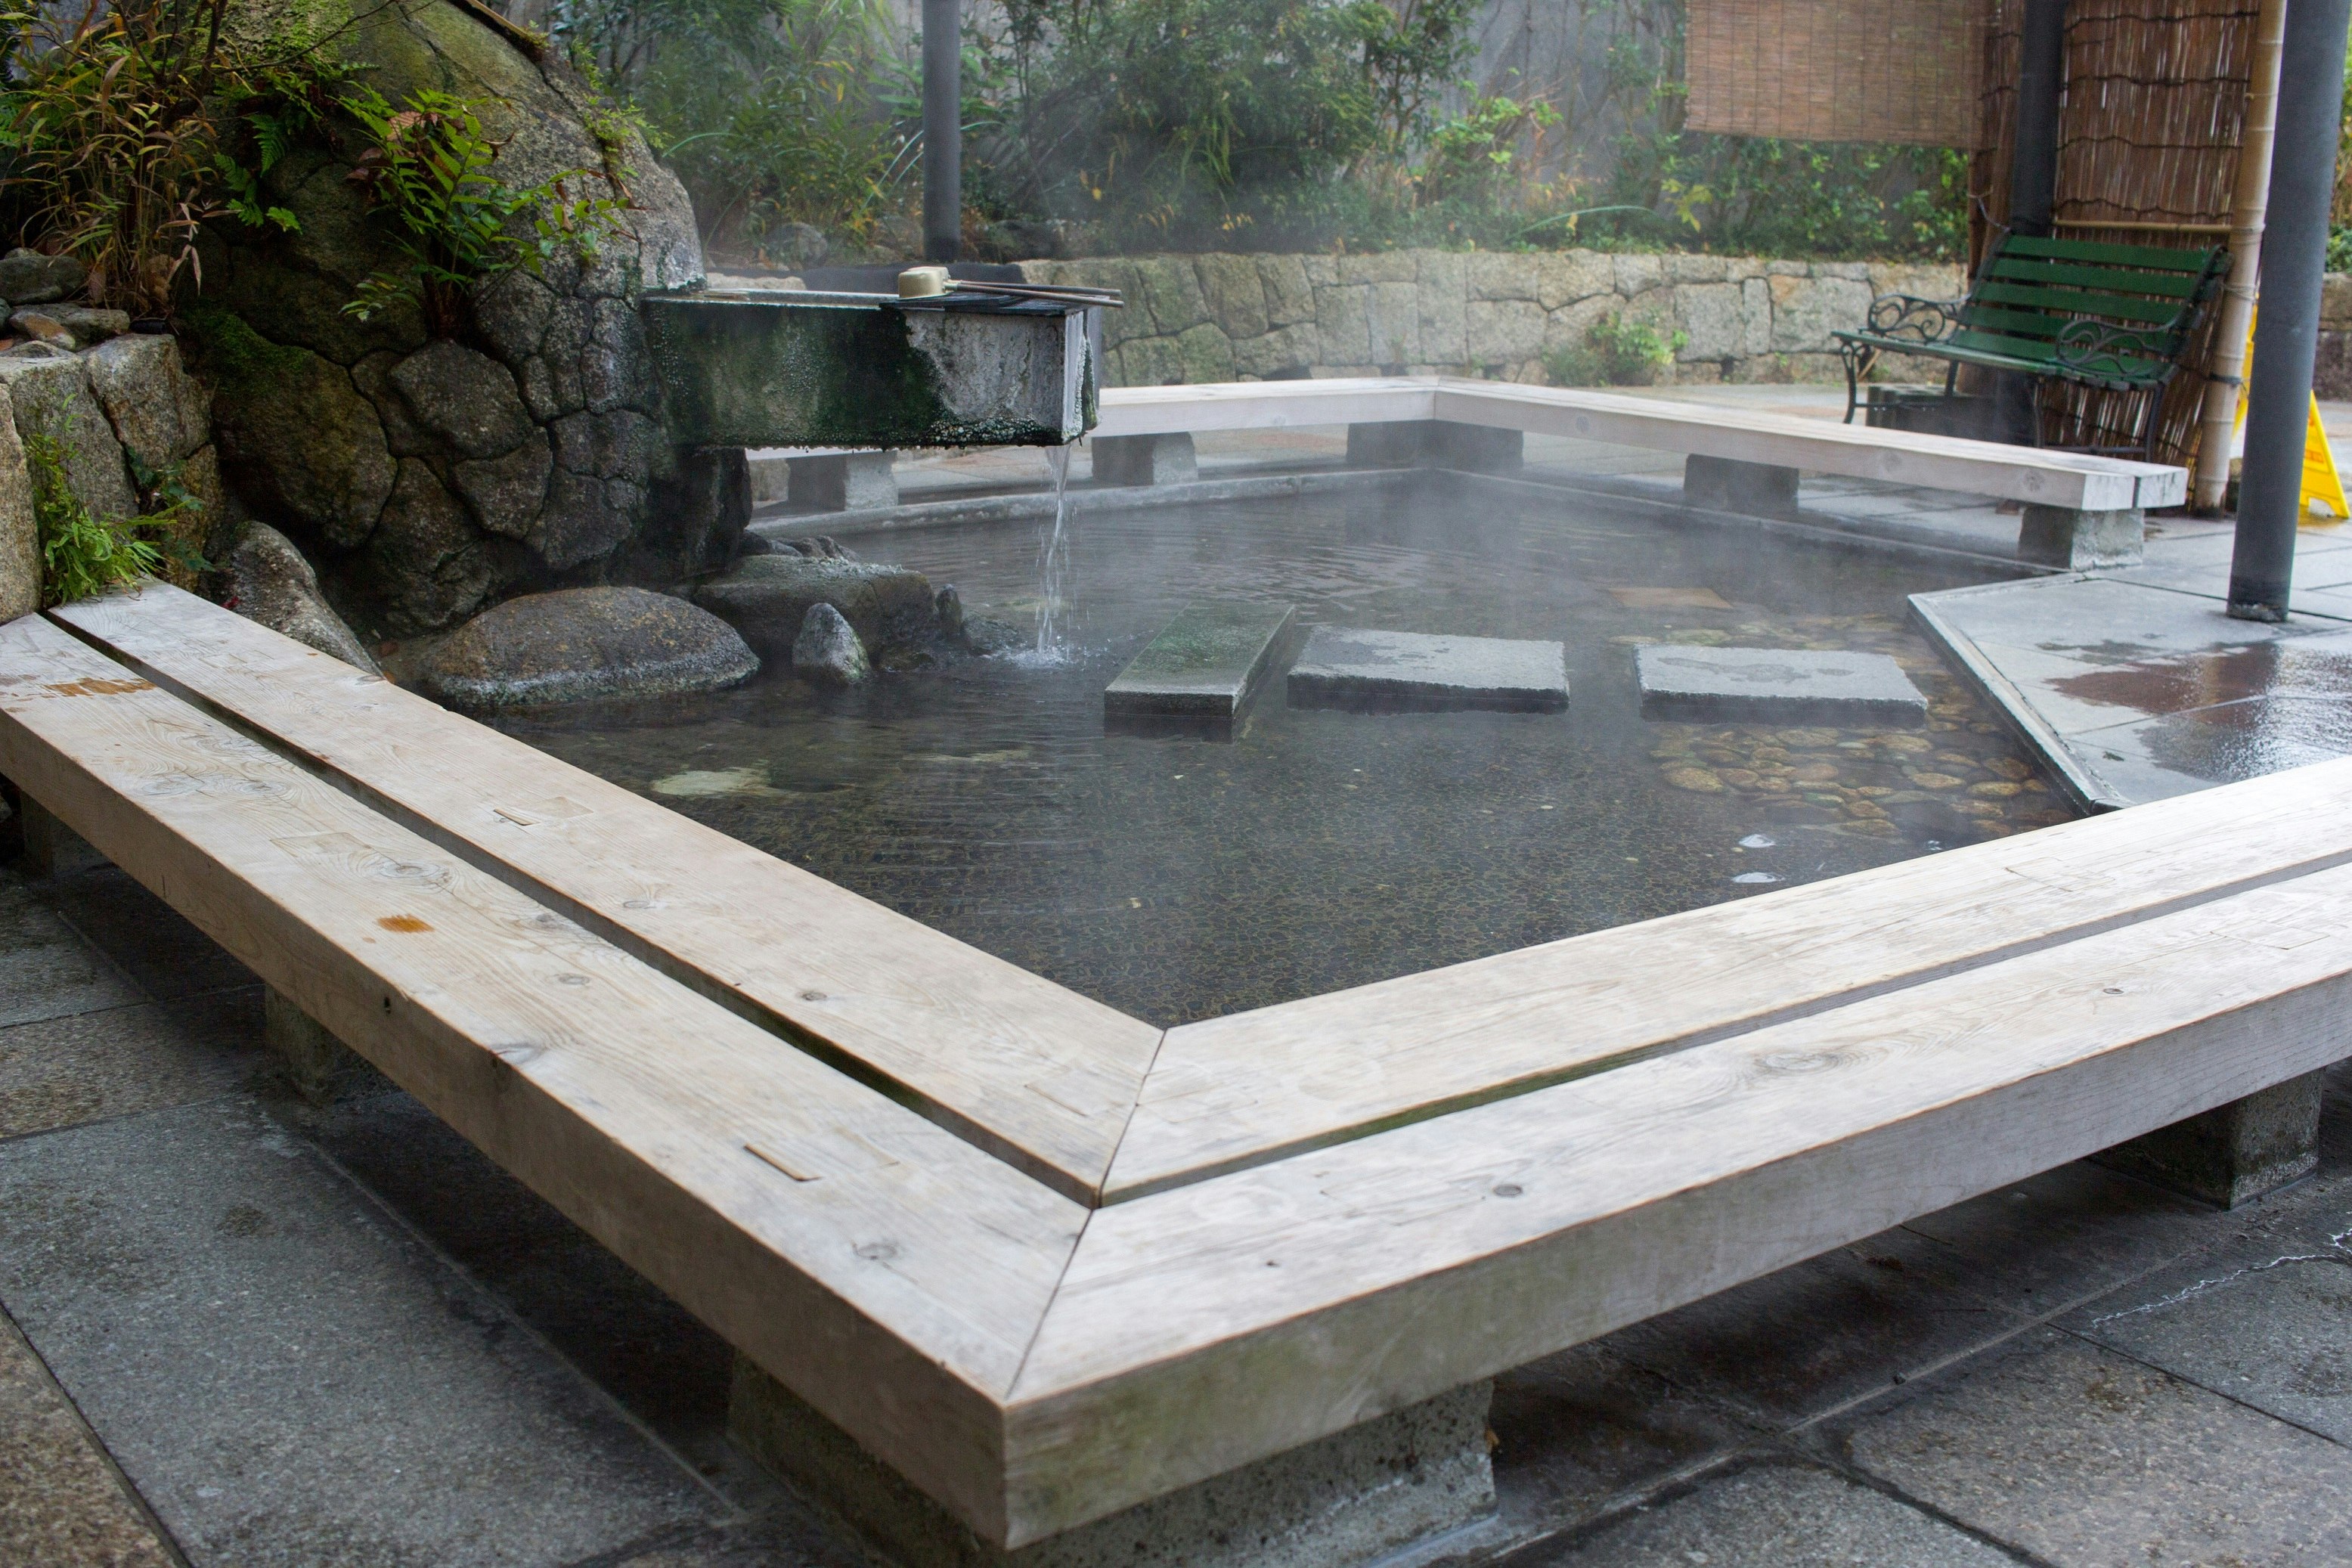 En onsen i Kaga.  Den varma poolen har en sexkantig form, med bänkar som omger den på alla sidor.  Vattnet sipprar in från ett rör ovanför poolen.